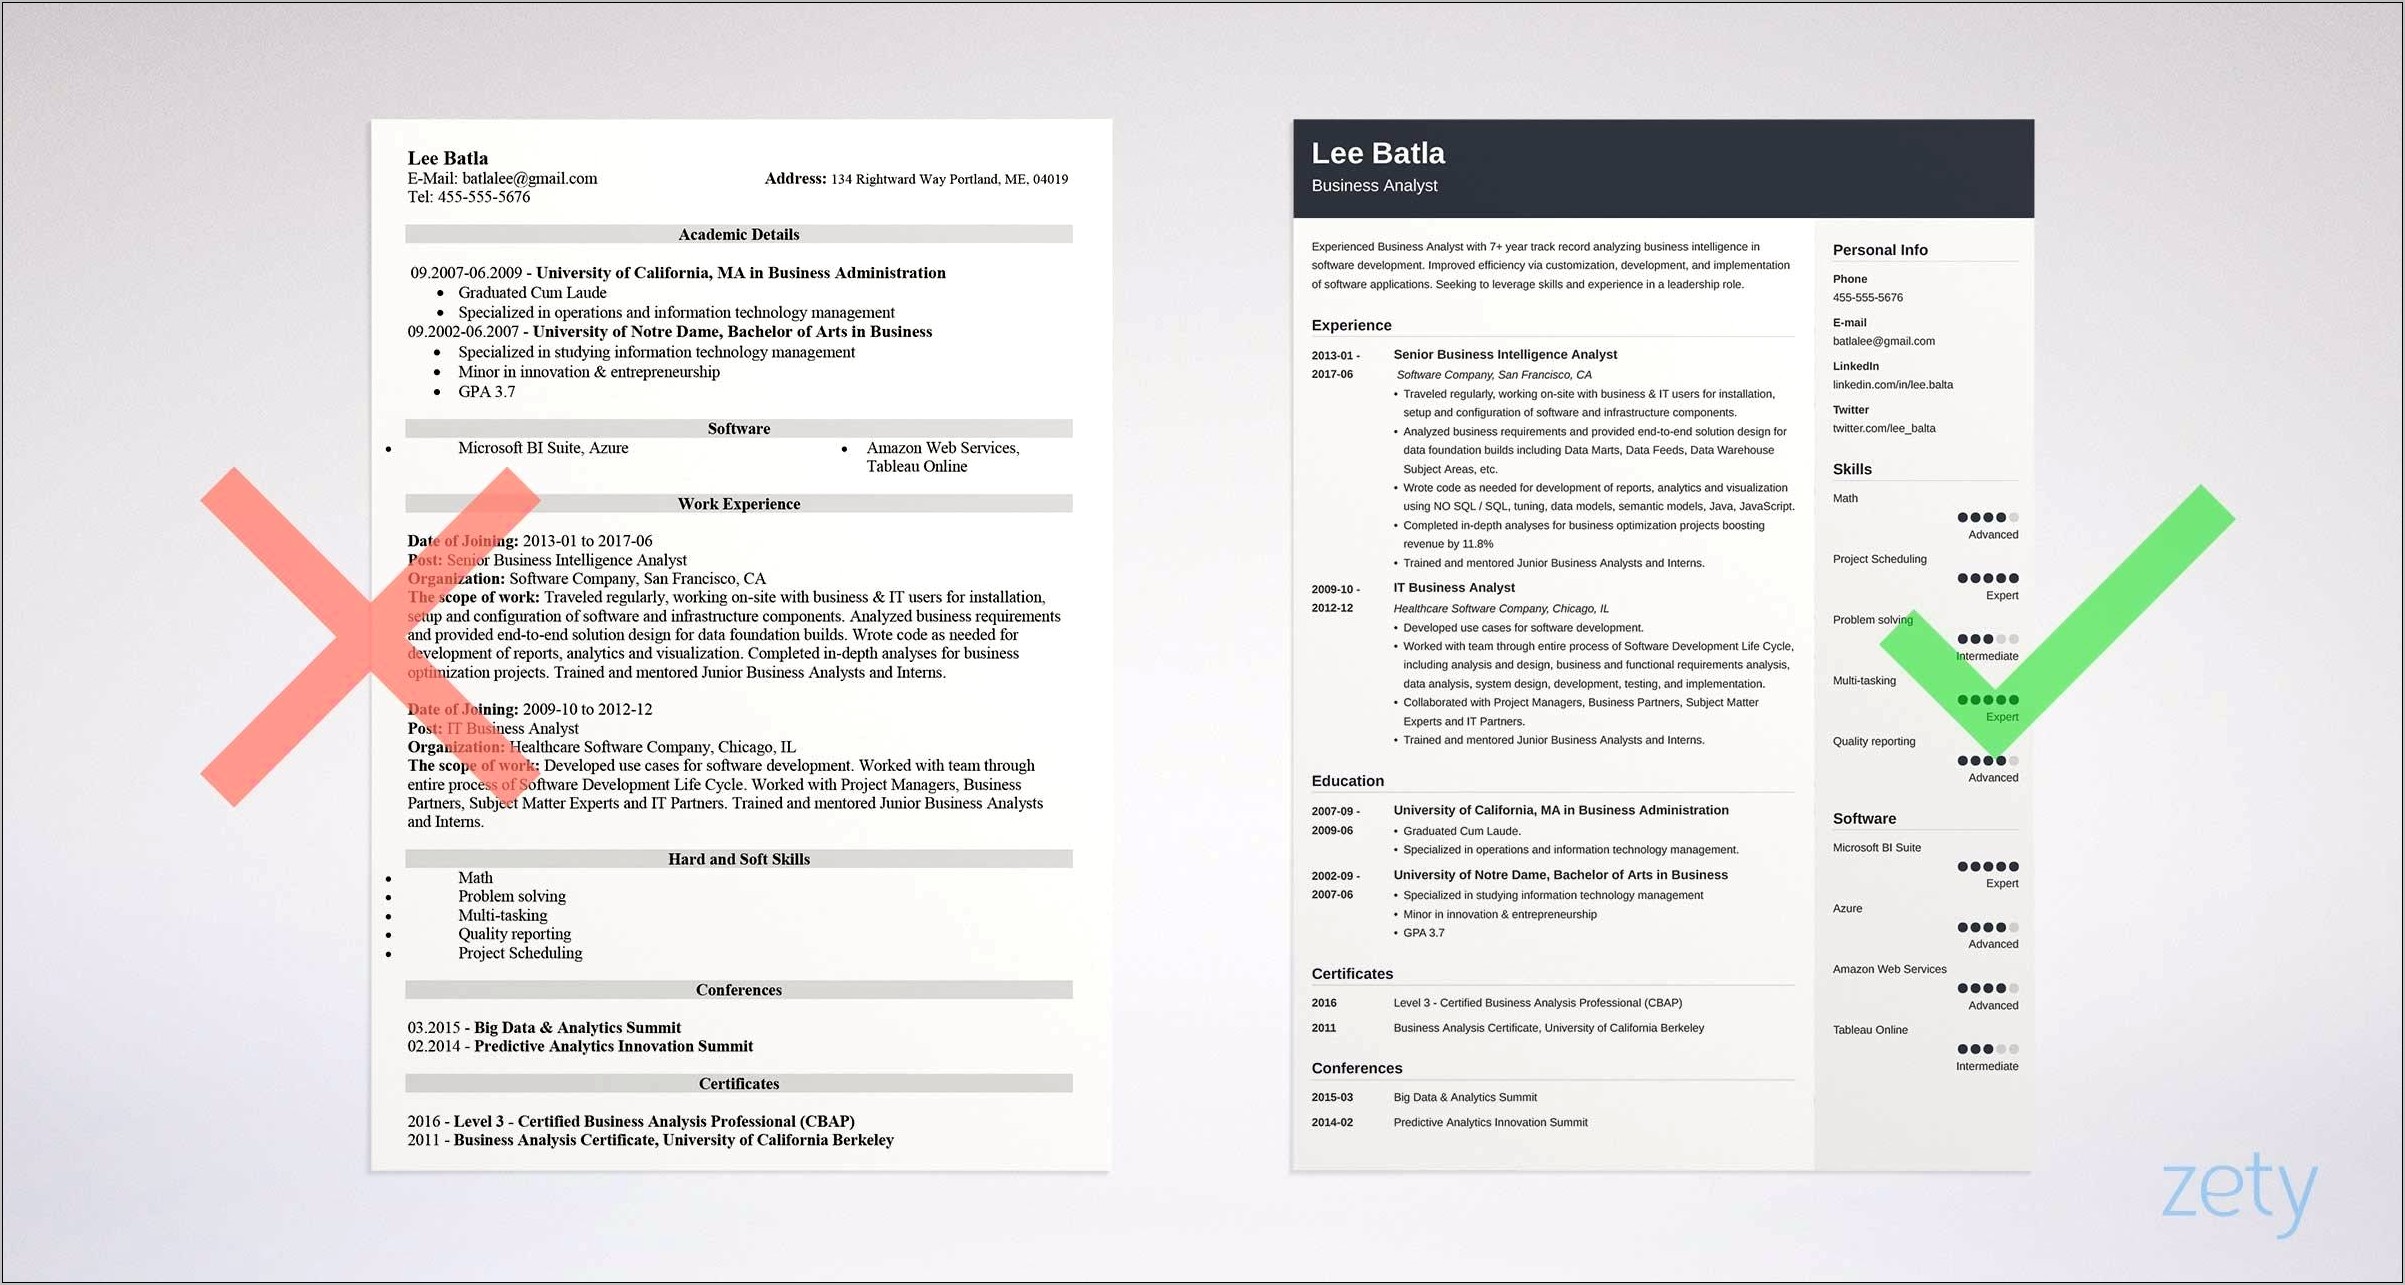 Ba 500 Job Description Resume Paper